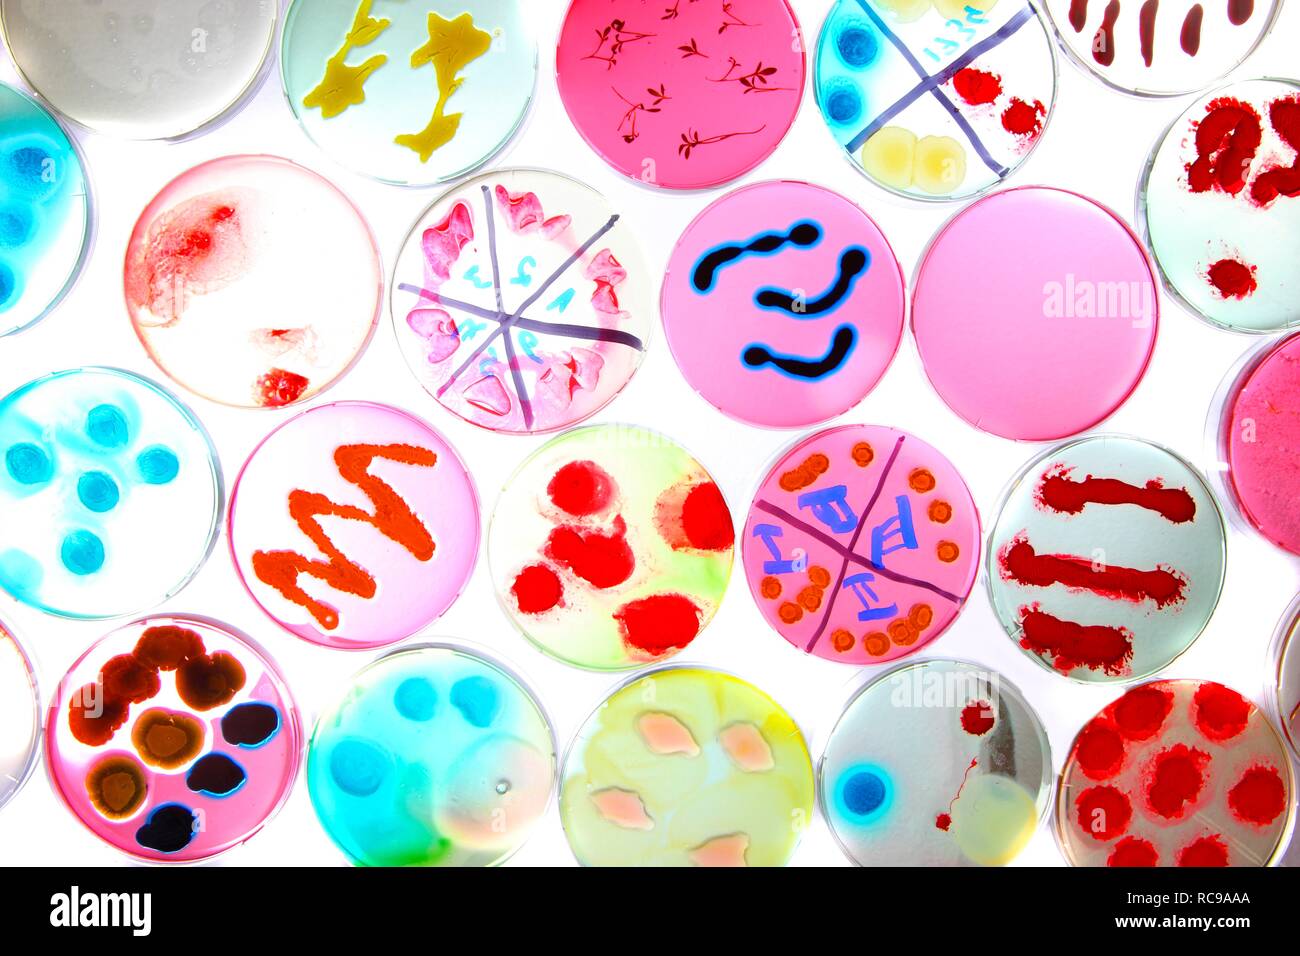 Des cultures bactériennes, de plus en plus de bactéries dans les boîtes de Petri Banque D'Images